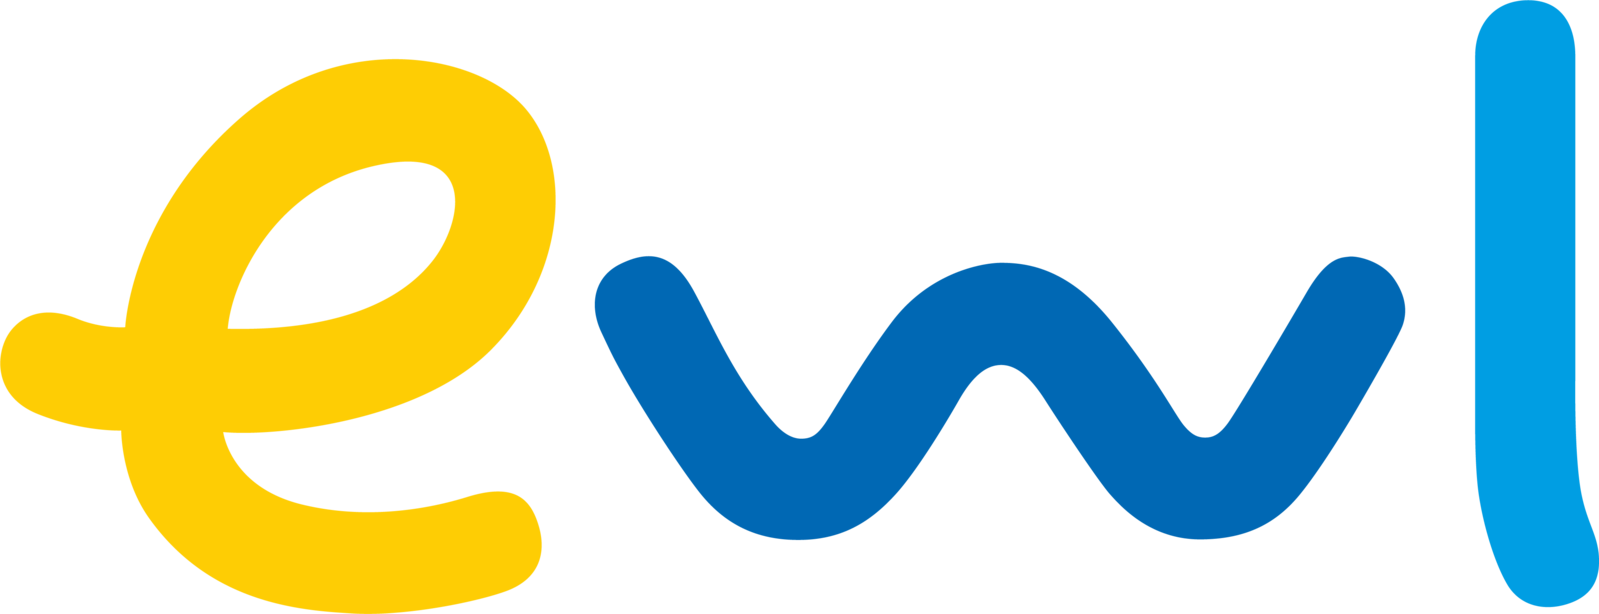 Logo ewl